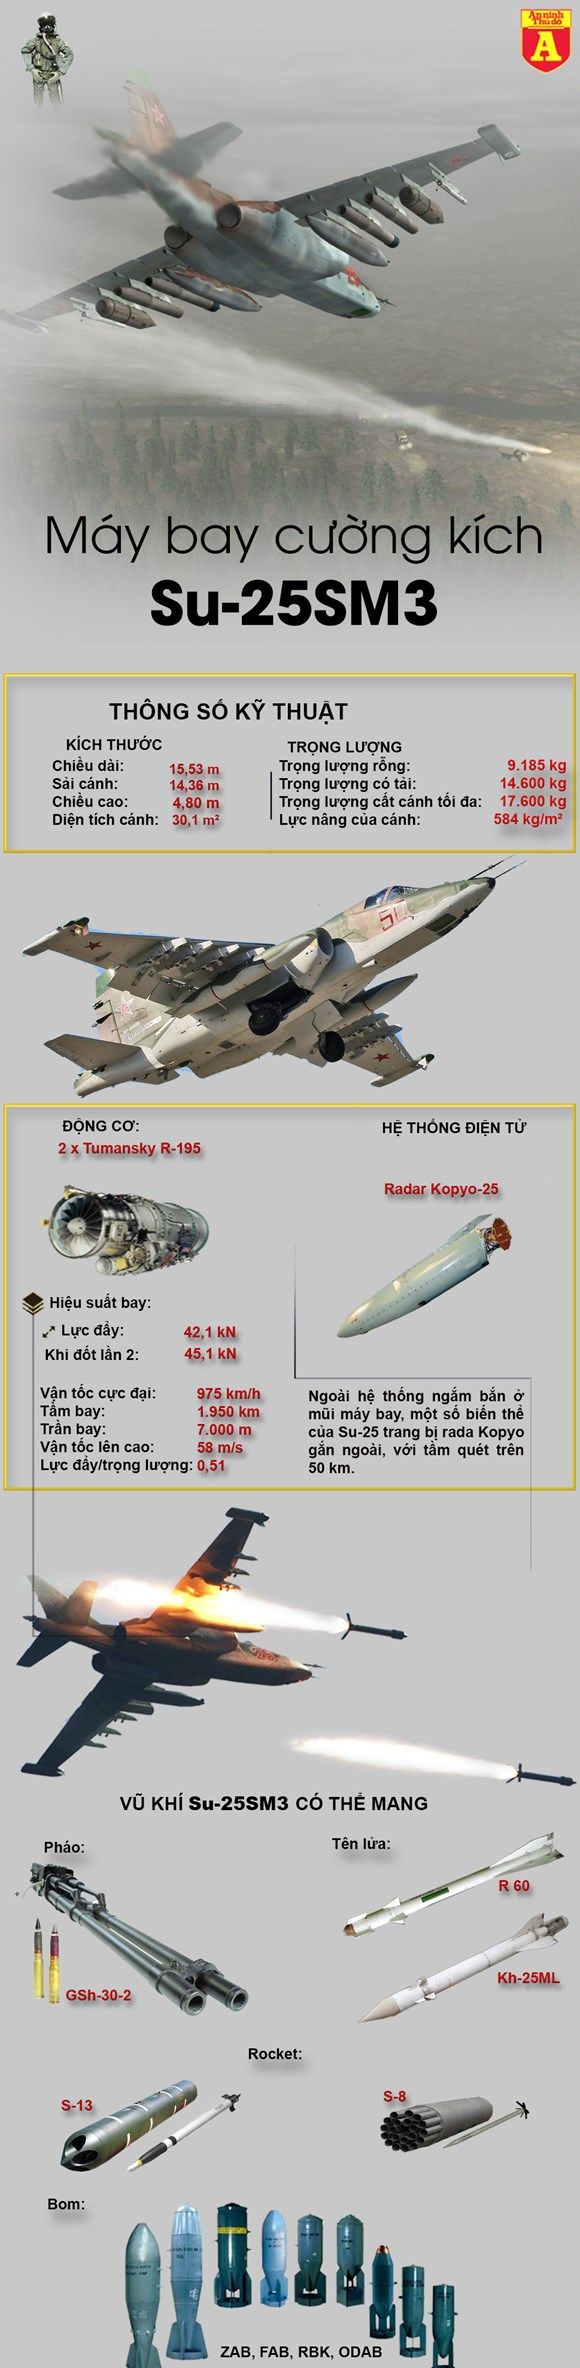 Sức mạnh của cường kích sát thủ Su-25SM3.